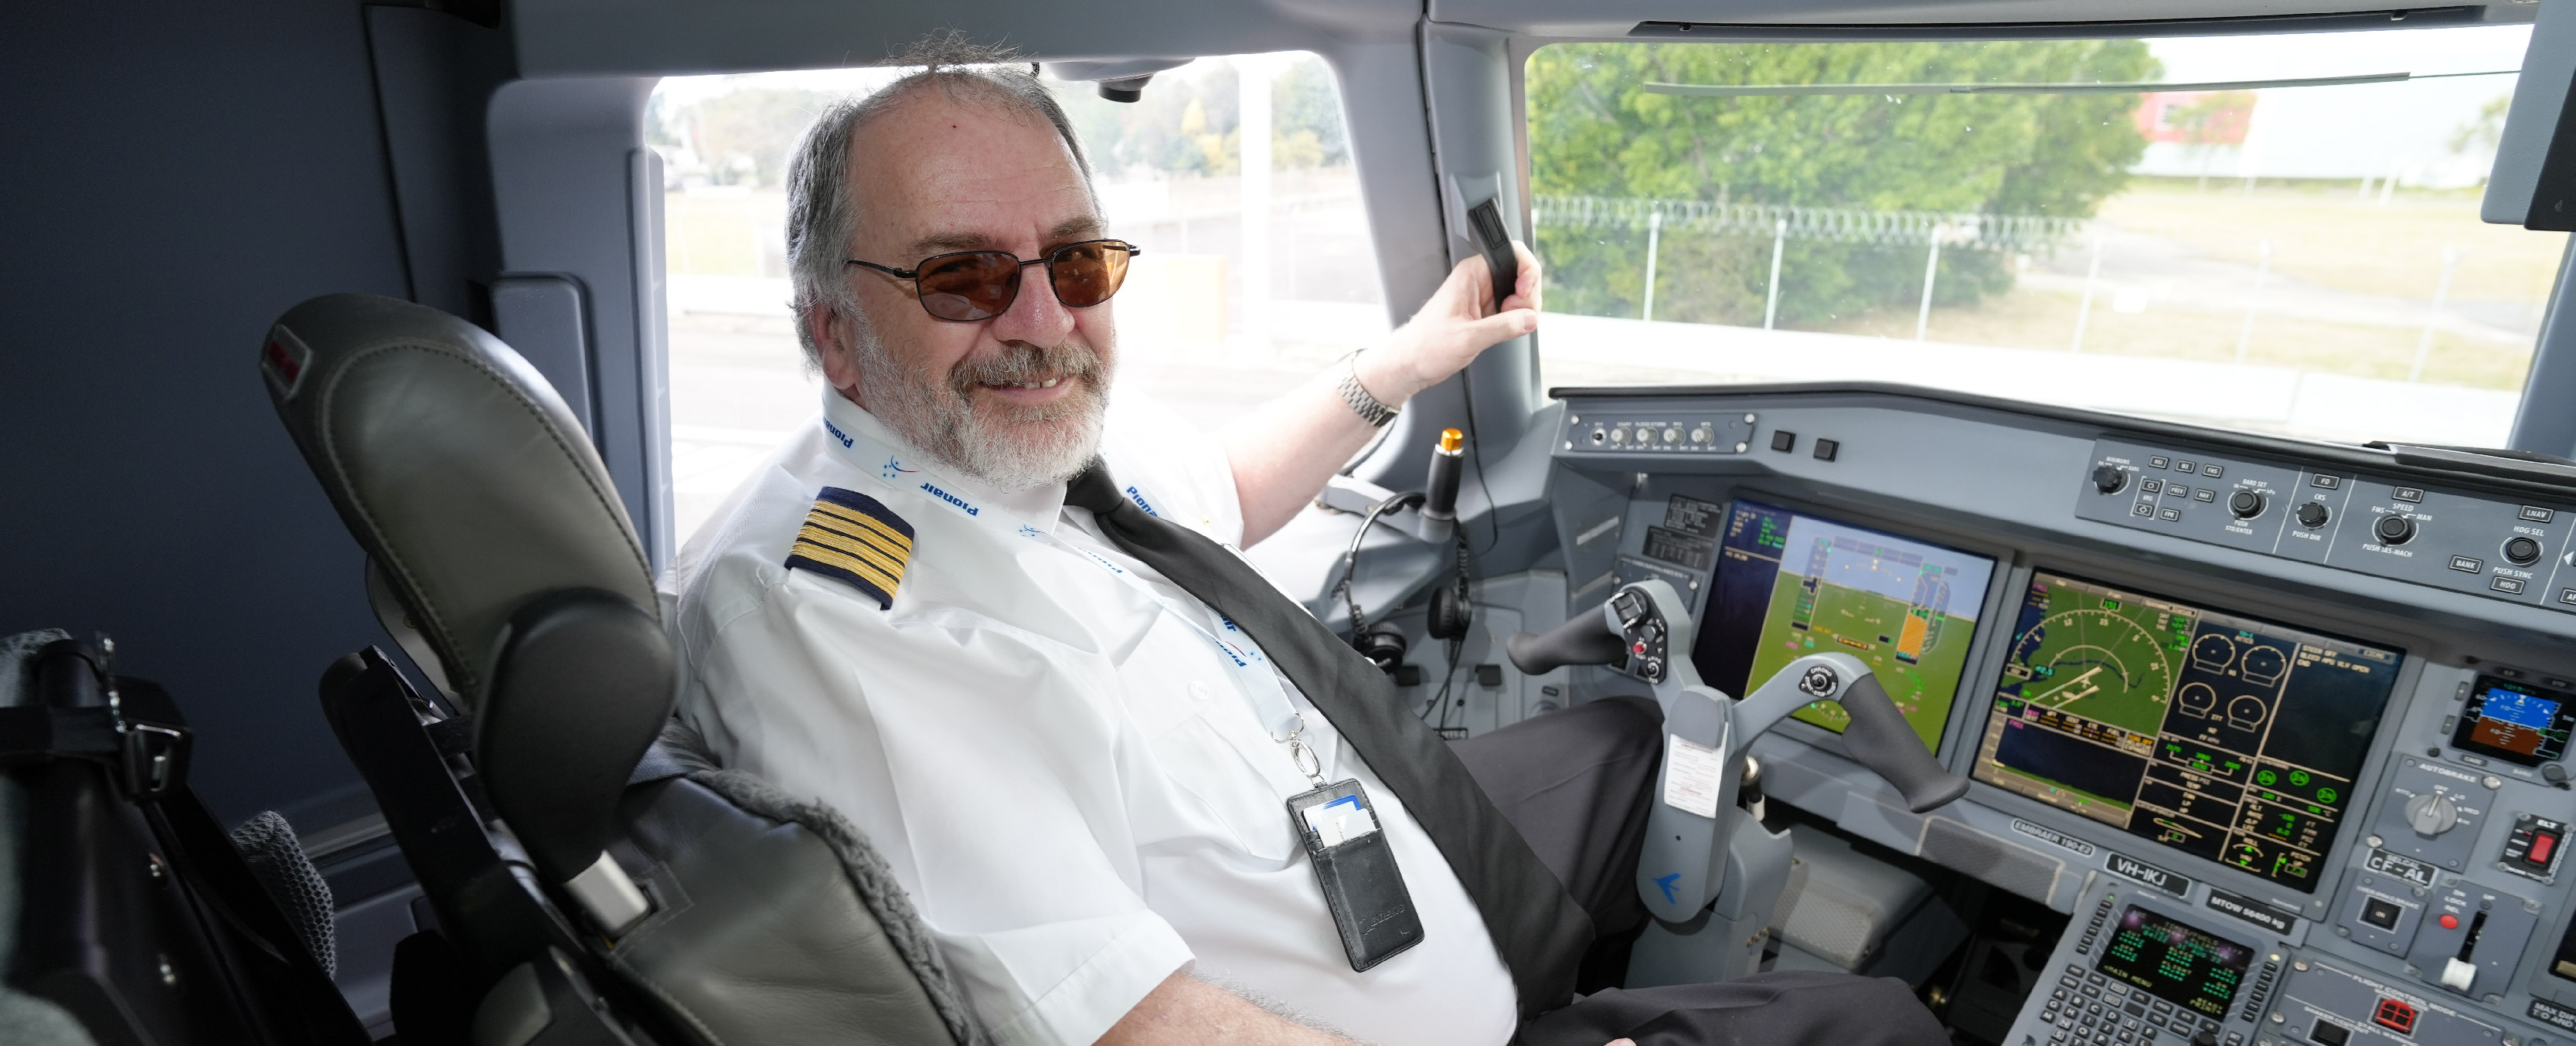 pilot sits in plane cockpit